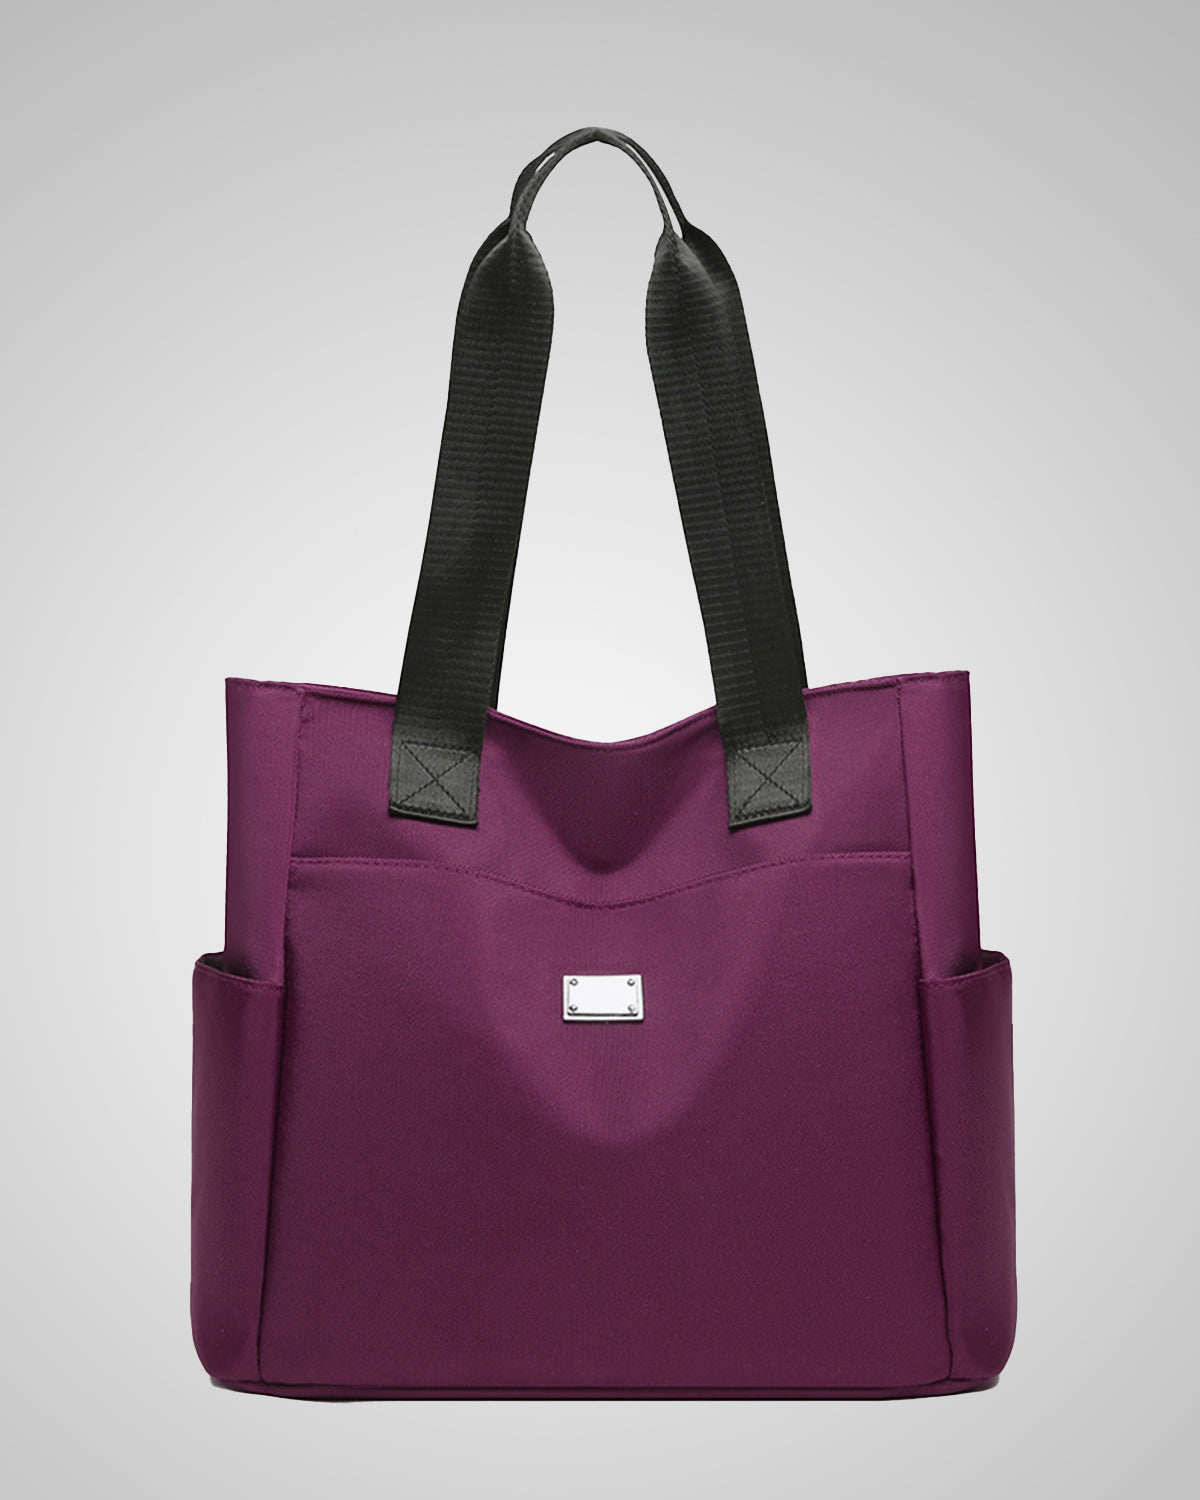 Hawkwell Tote Bag - Alfio Purple